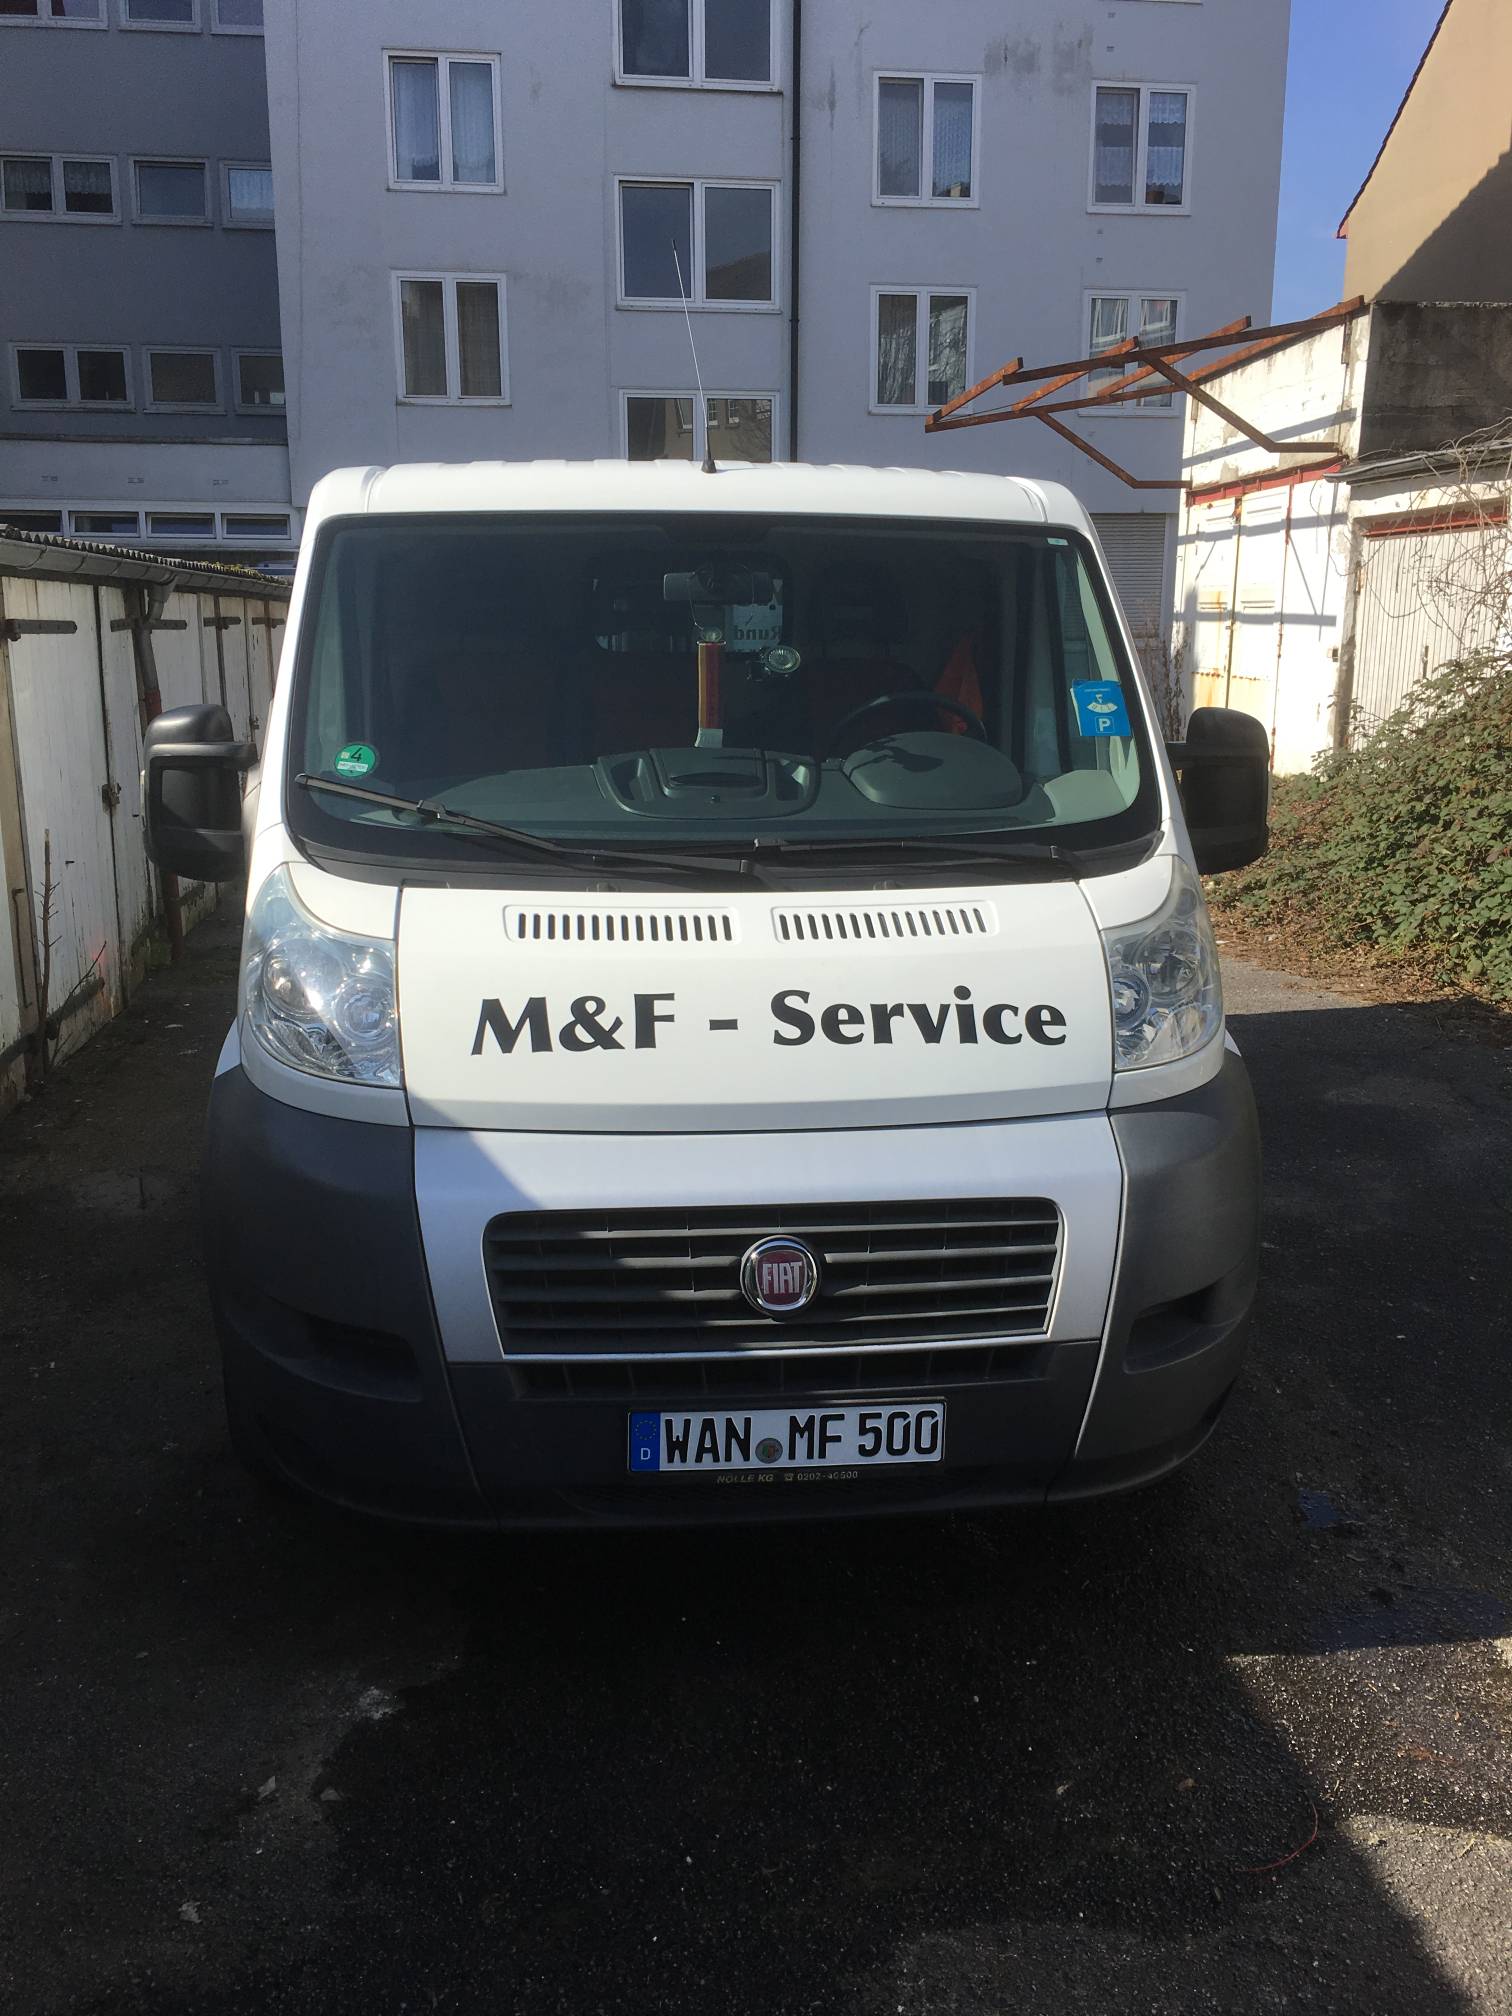 Bild 1 M&F-Service in Herne